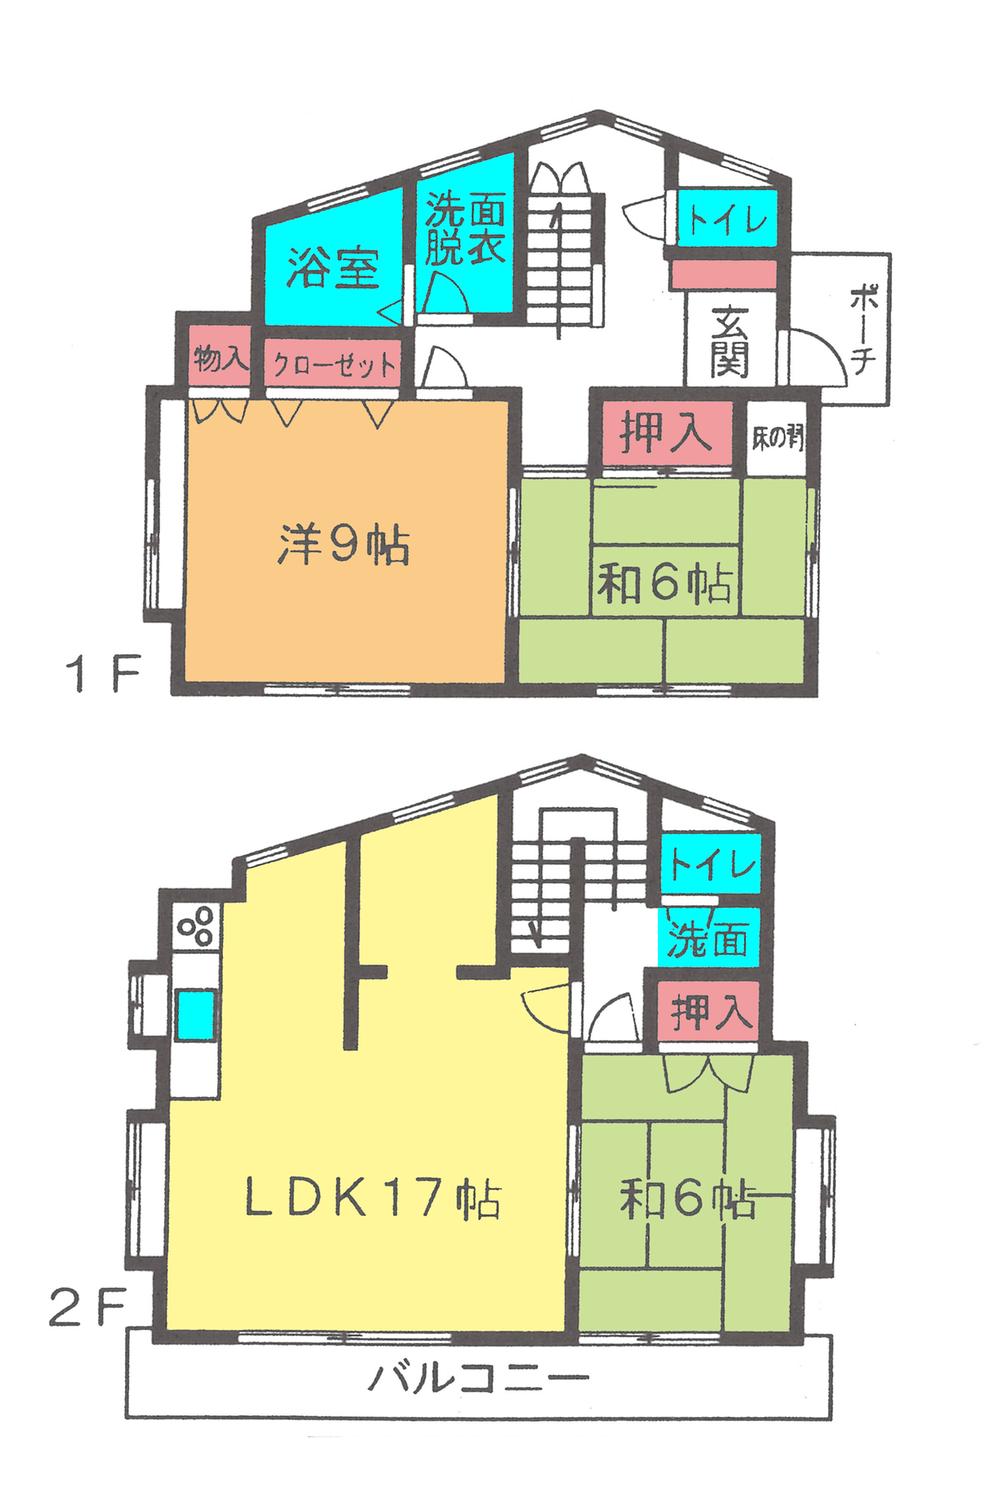 Floor plan. 17.8 million yen, 3LDK + S (storeroom), Land area 96.17 sq m , Building area 95.87 sq m floor plan